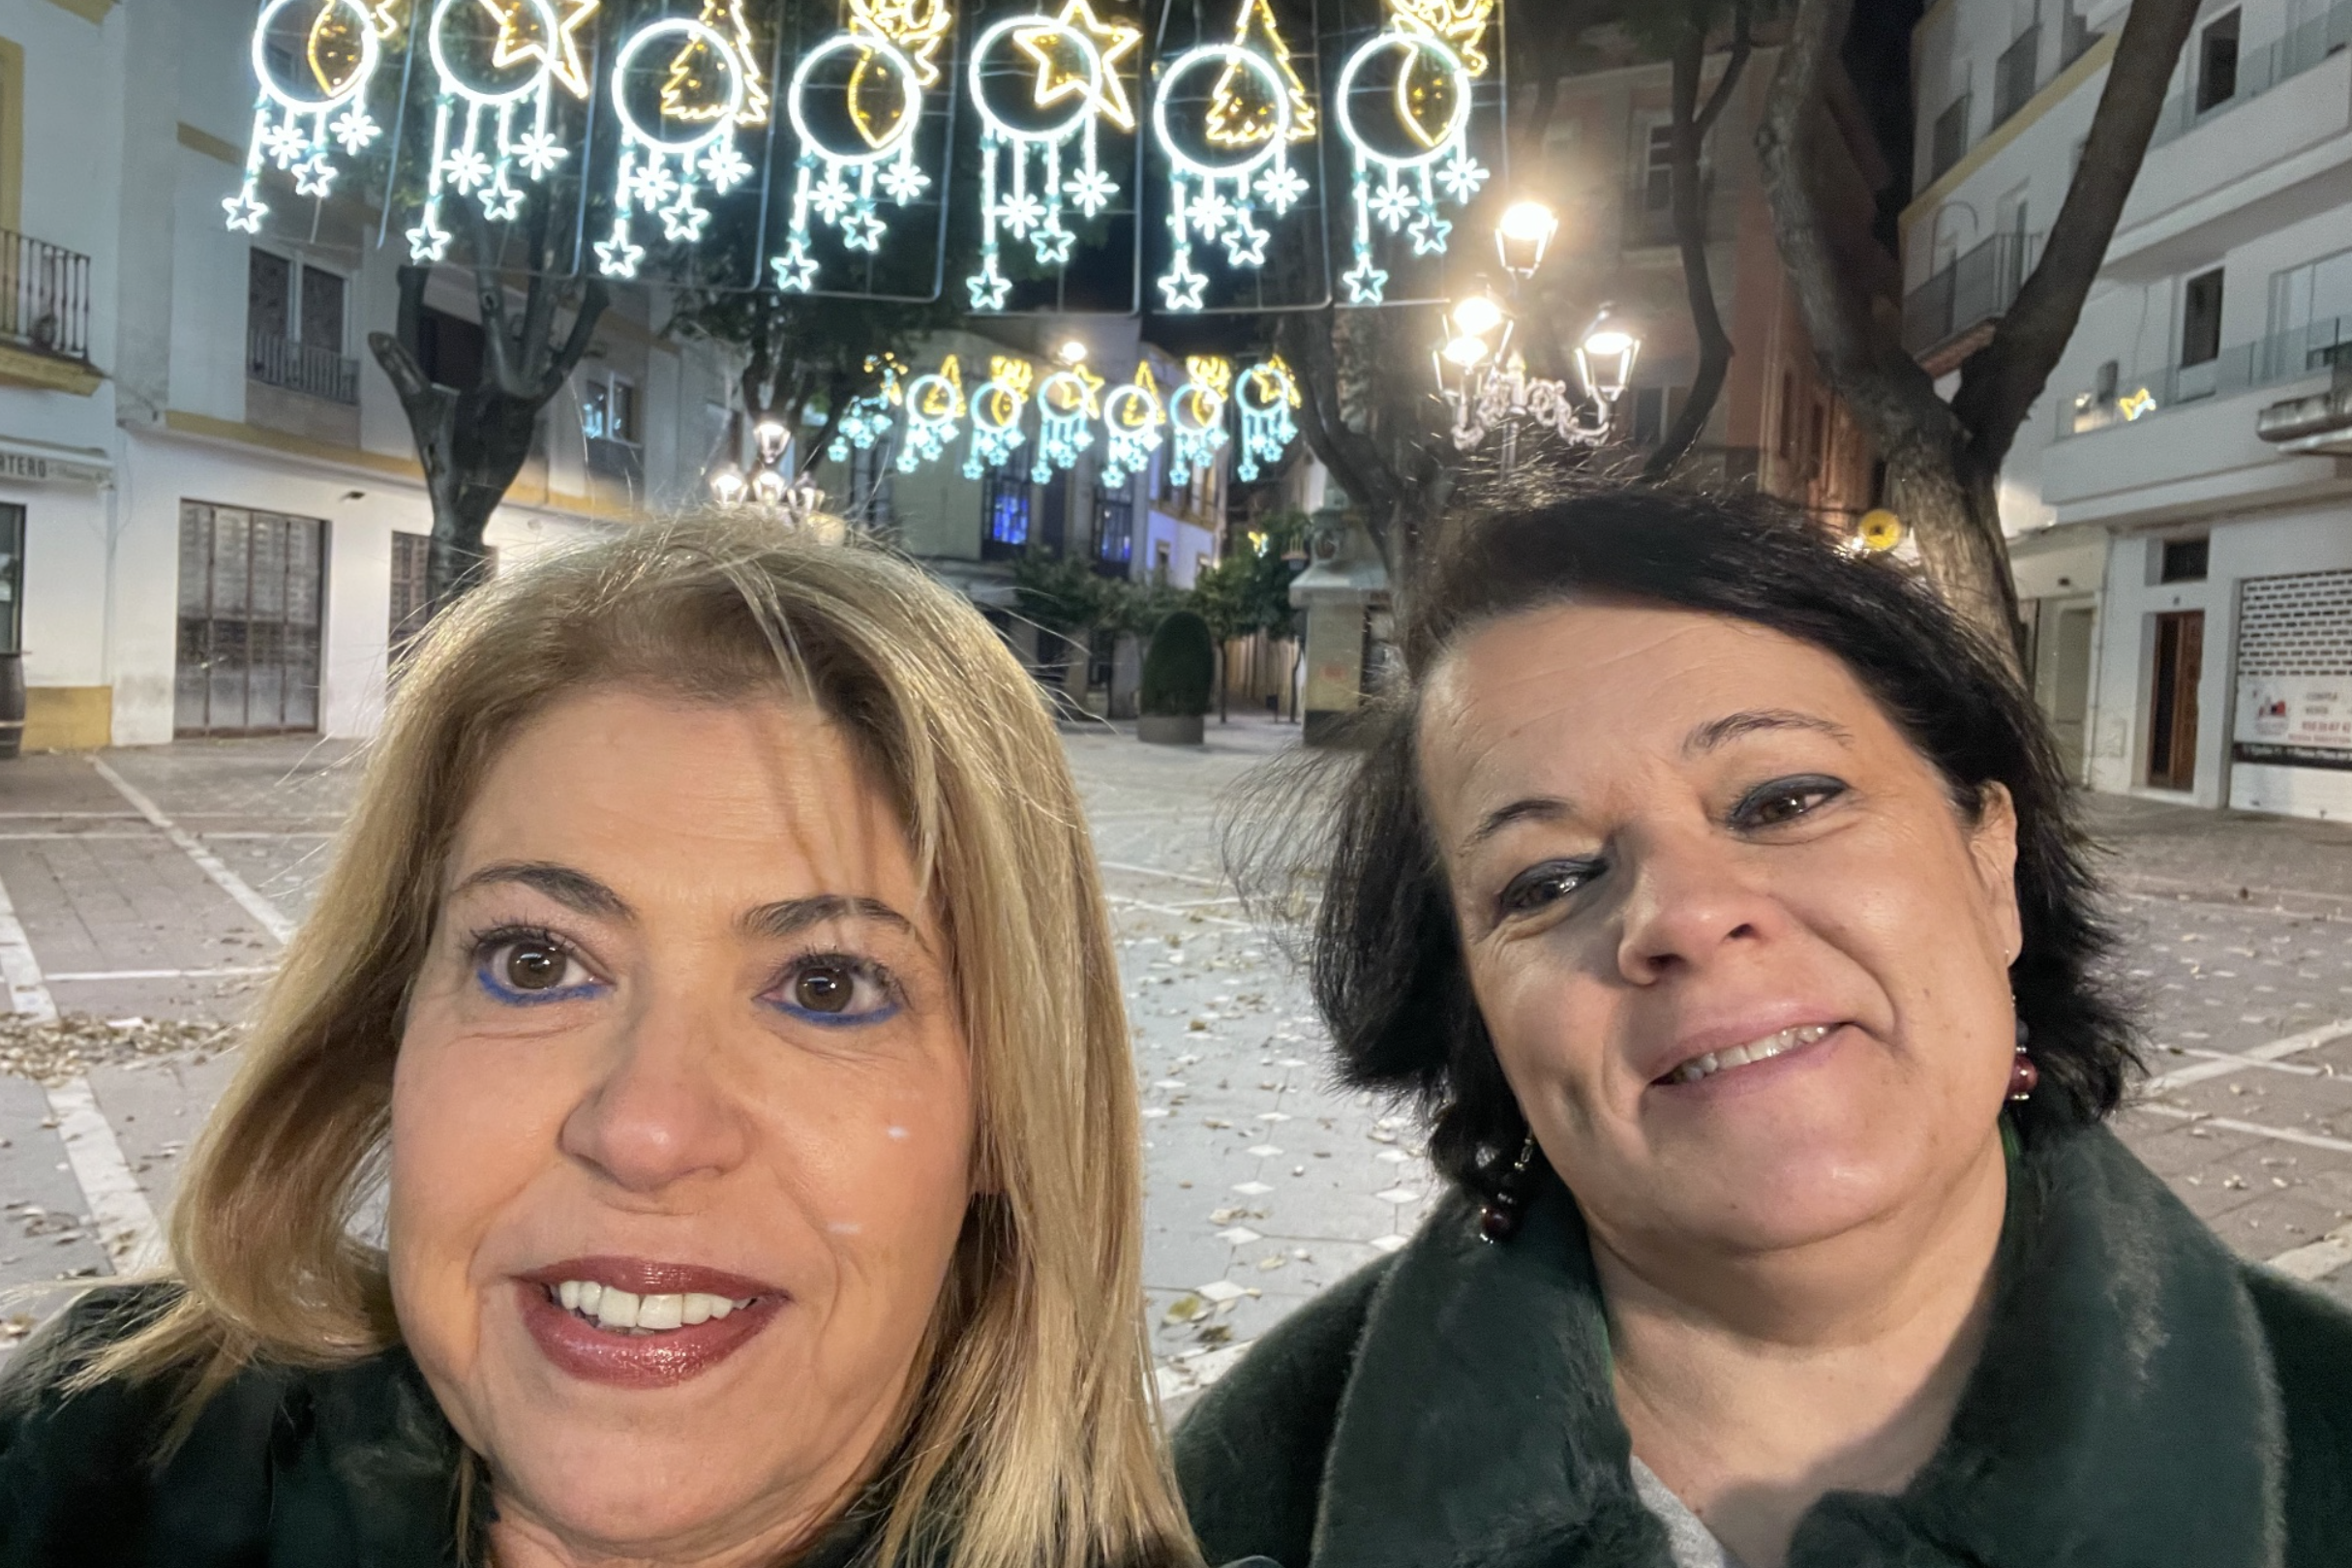 La ex alcaldesa Mamen Sánchez entra en el top de 'Mejores Zascas' por las luces de Navidad en Jerez.